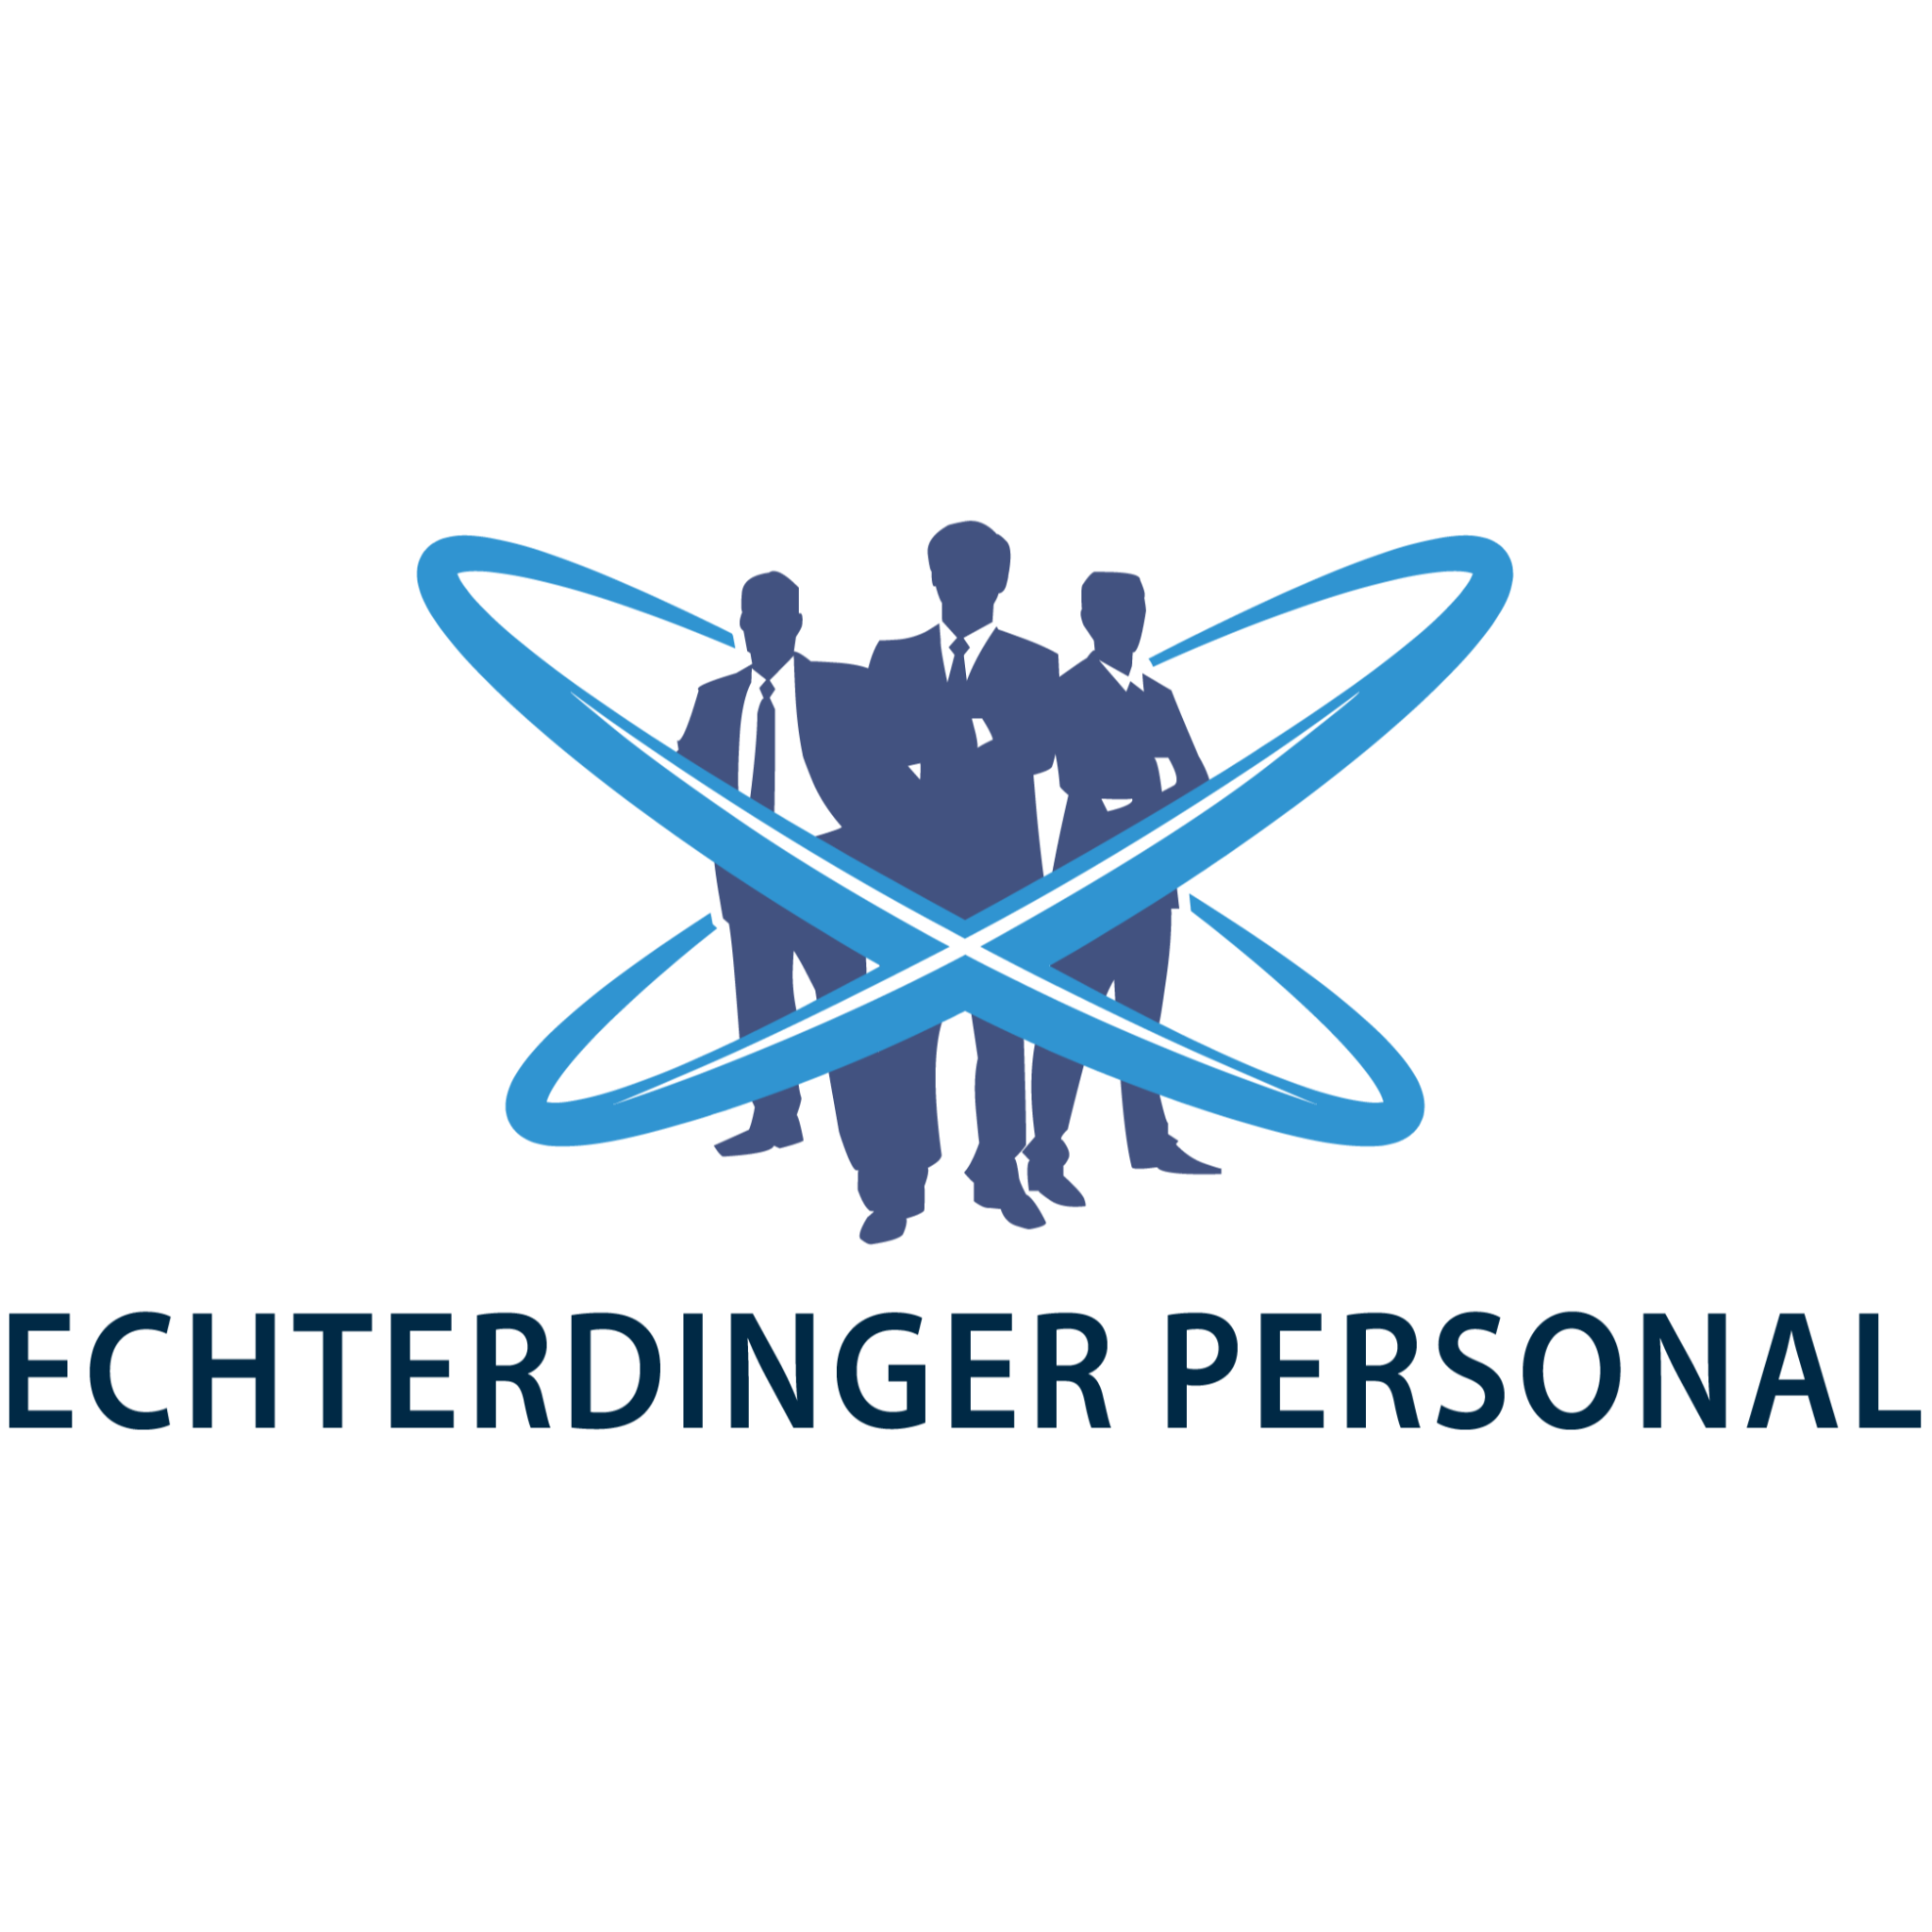 Echterdinger Personal GmbH - Zeitarbeit - Arbeitnehmerüberlassung in Leinfelden Echterdingen - Logo